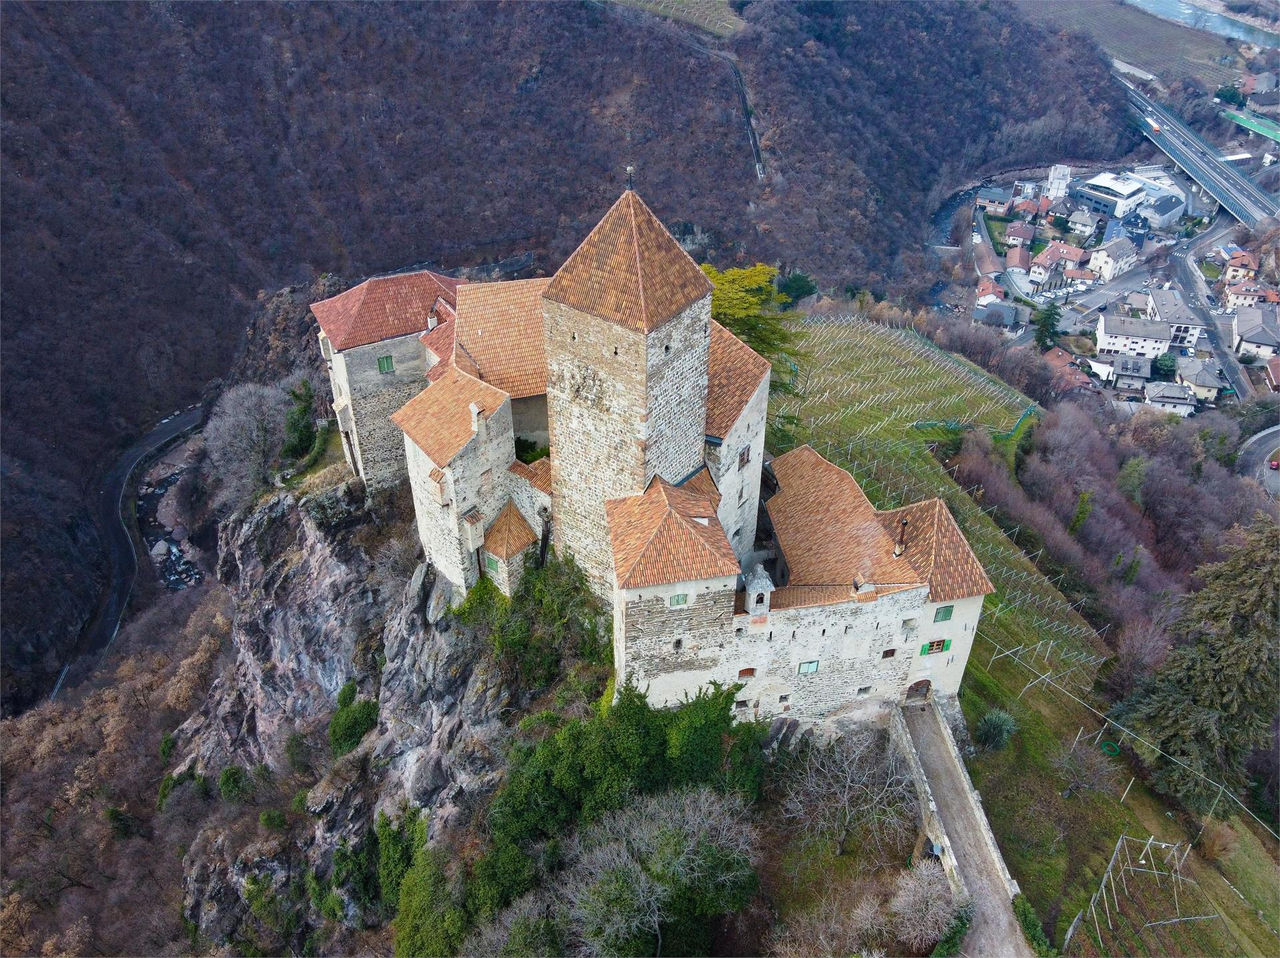 Cornedo Castle